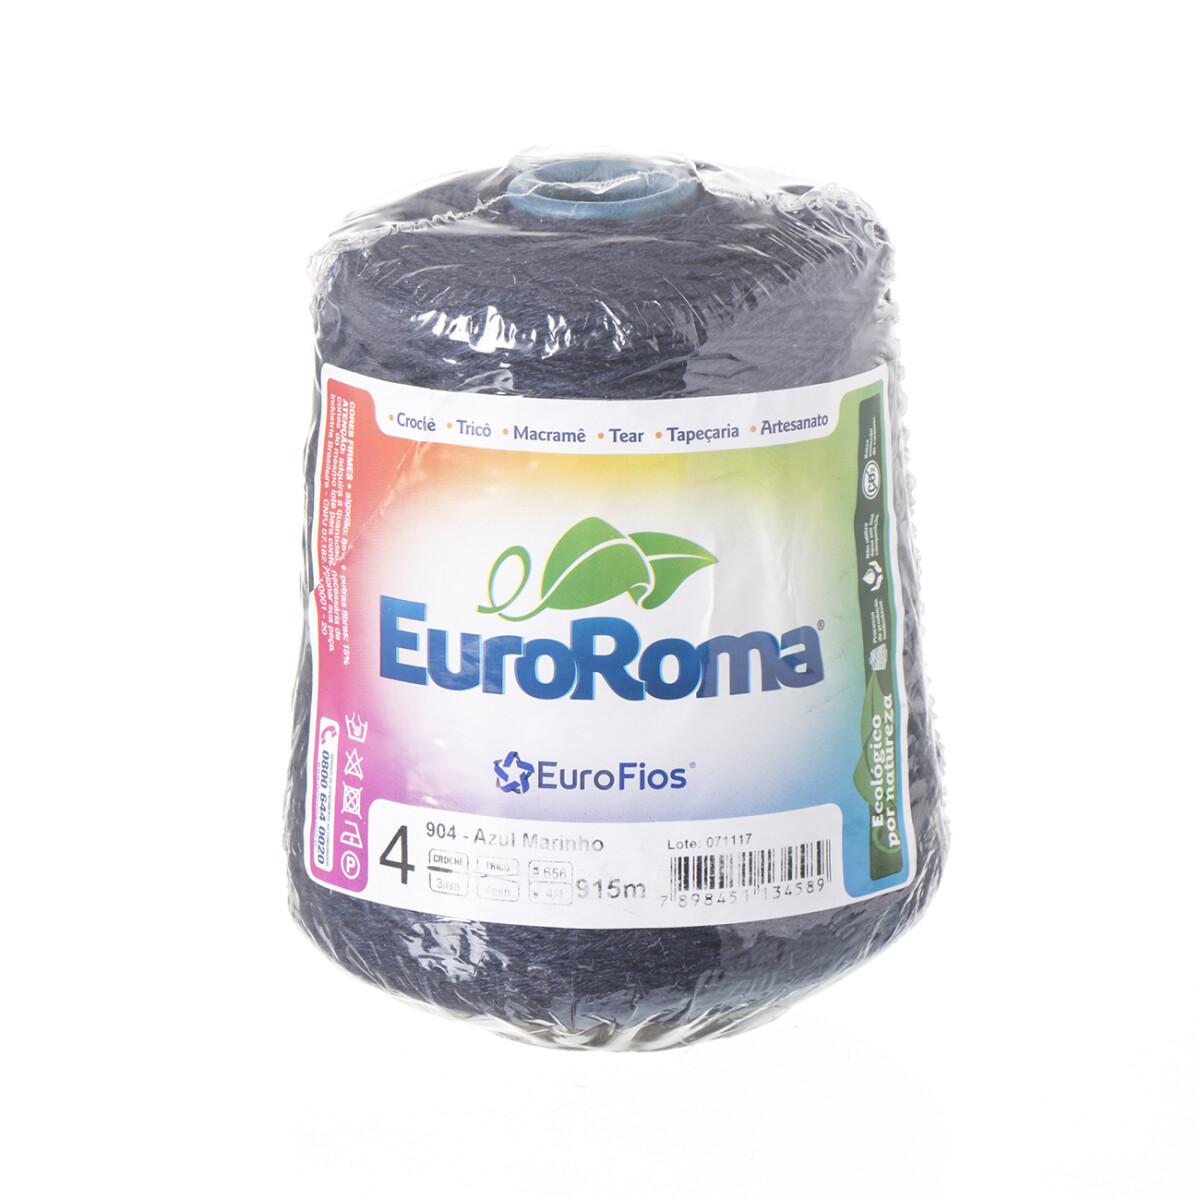 Euroroma algodón Colorido manualidades - azul marino 